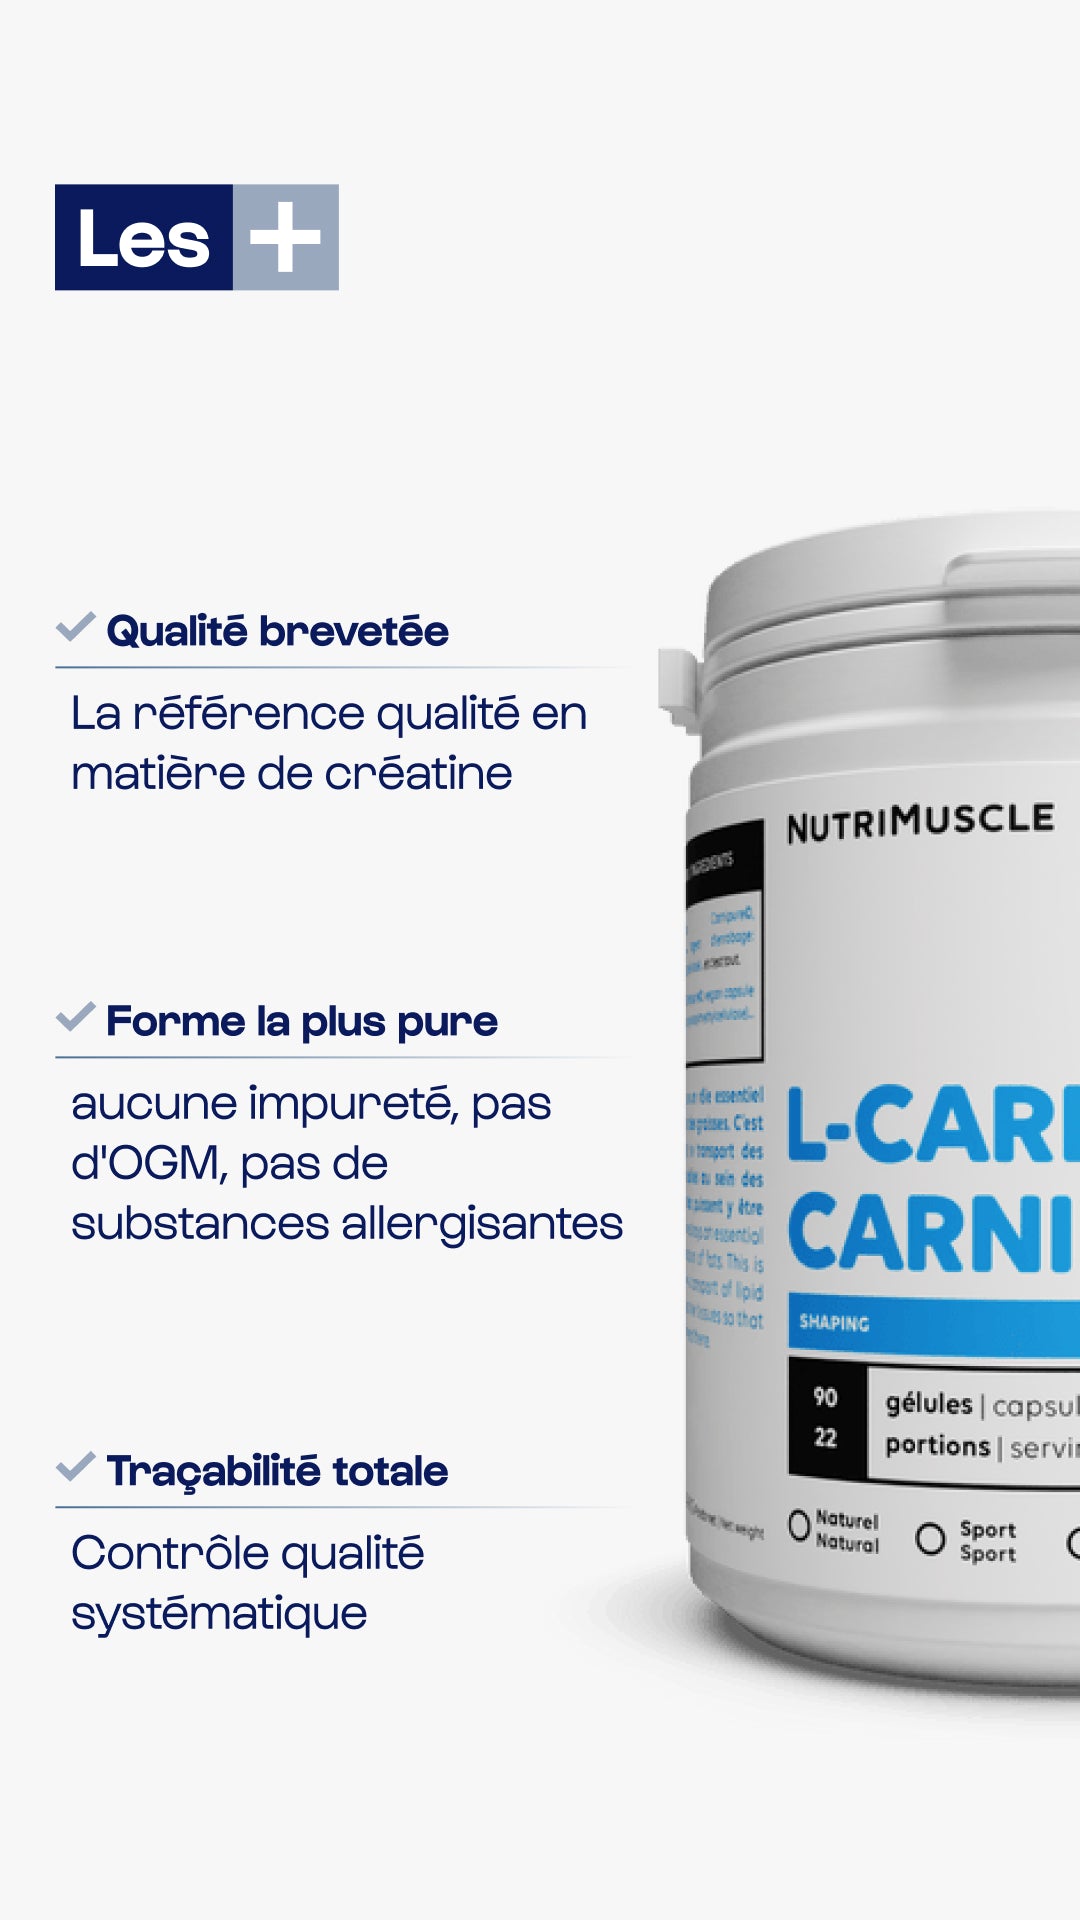 Carnitin Carnipure® in Kapseln